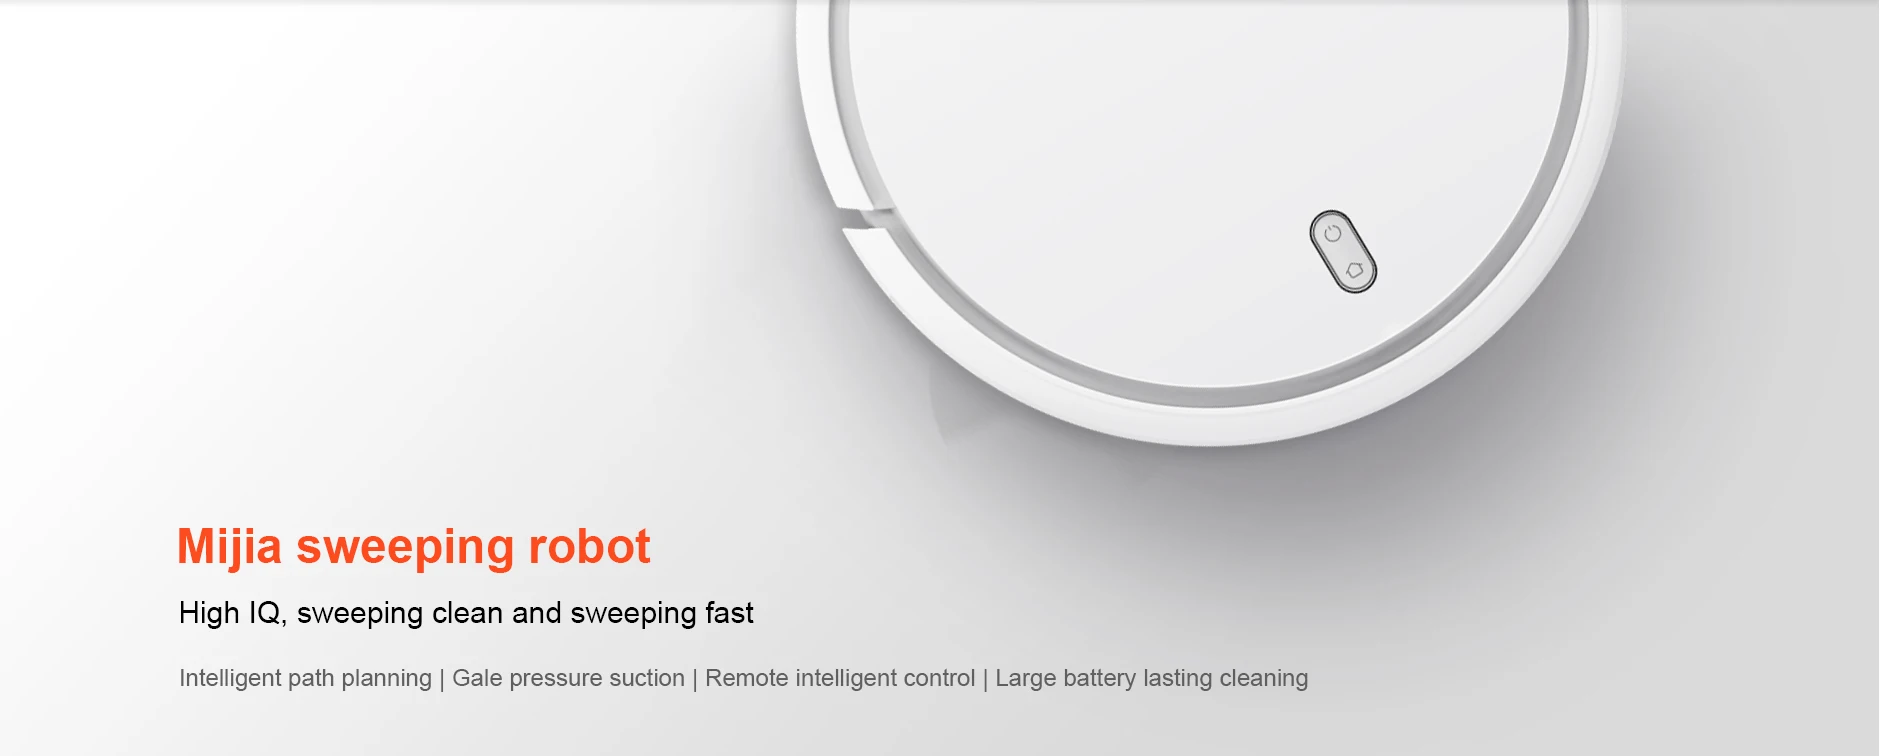 Xiaomi mi jia робот пылесос для дома автоматическая подметание пыли стерилизовать умный планируемый wifi приложение дистанционное управление